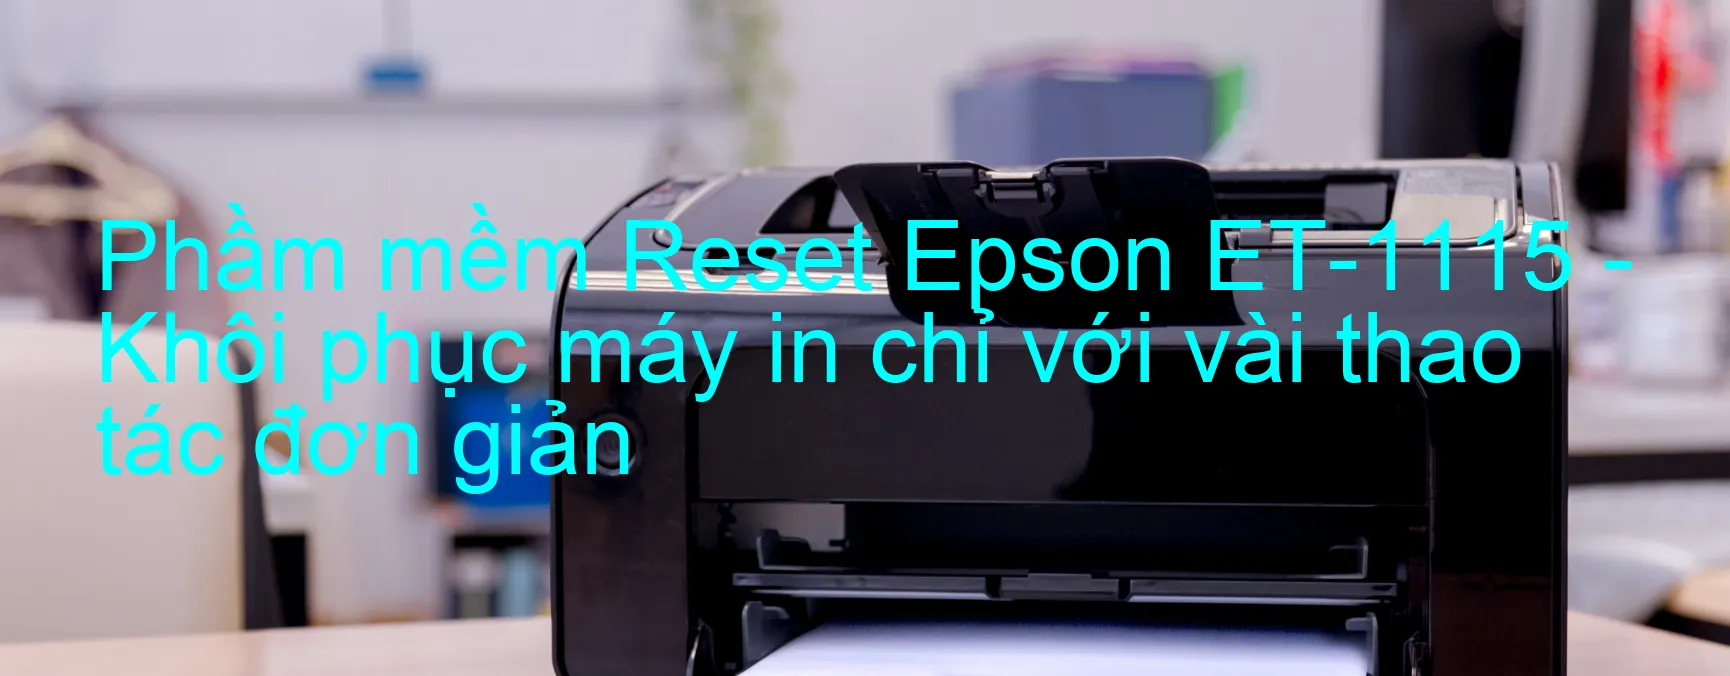 Phầm mềm Reset Epson ET-1115 - Khôi phục máy in chỉ với vài thao tác đơn giản